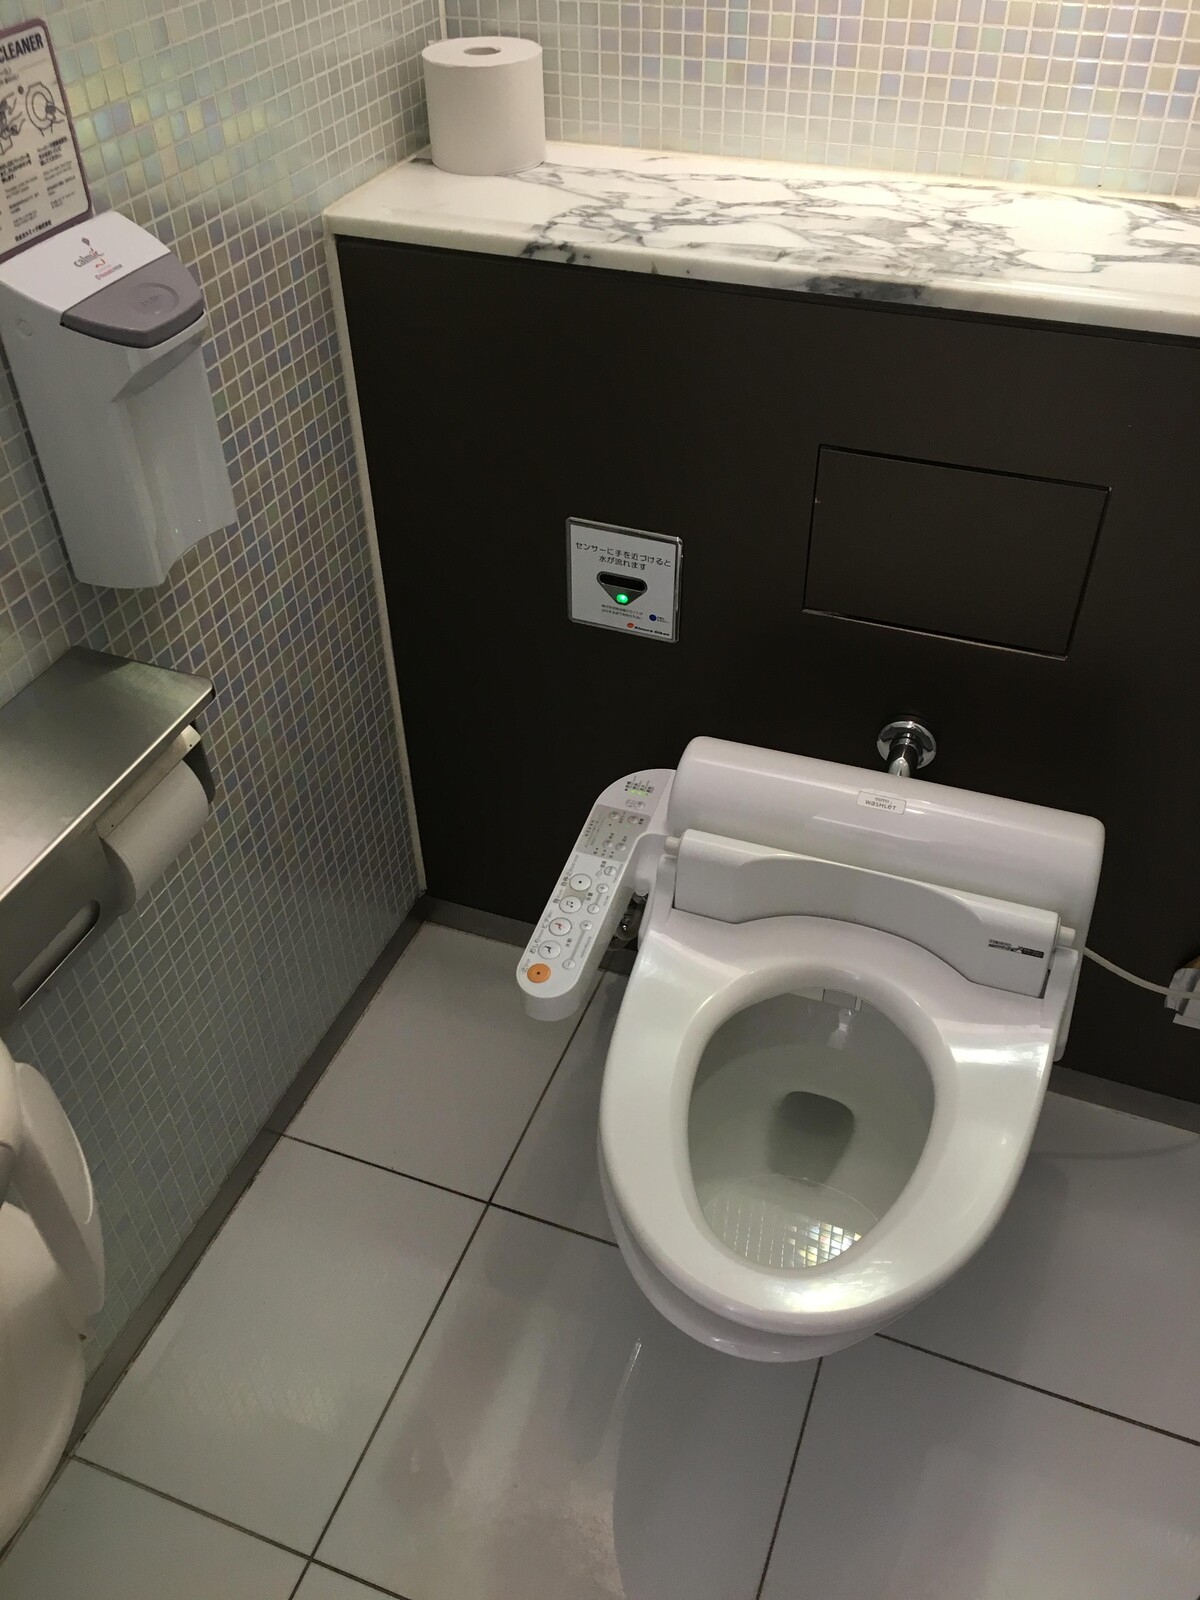 【画像】東京駅の有料トイレ(1回100円)のクオリティwwwwwwwwwwwwwwwwwwwww まるたろうの